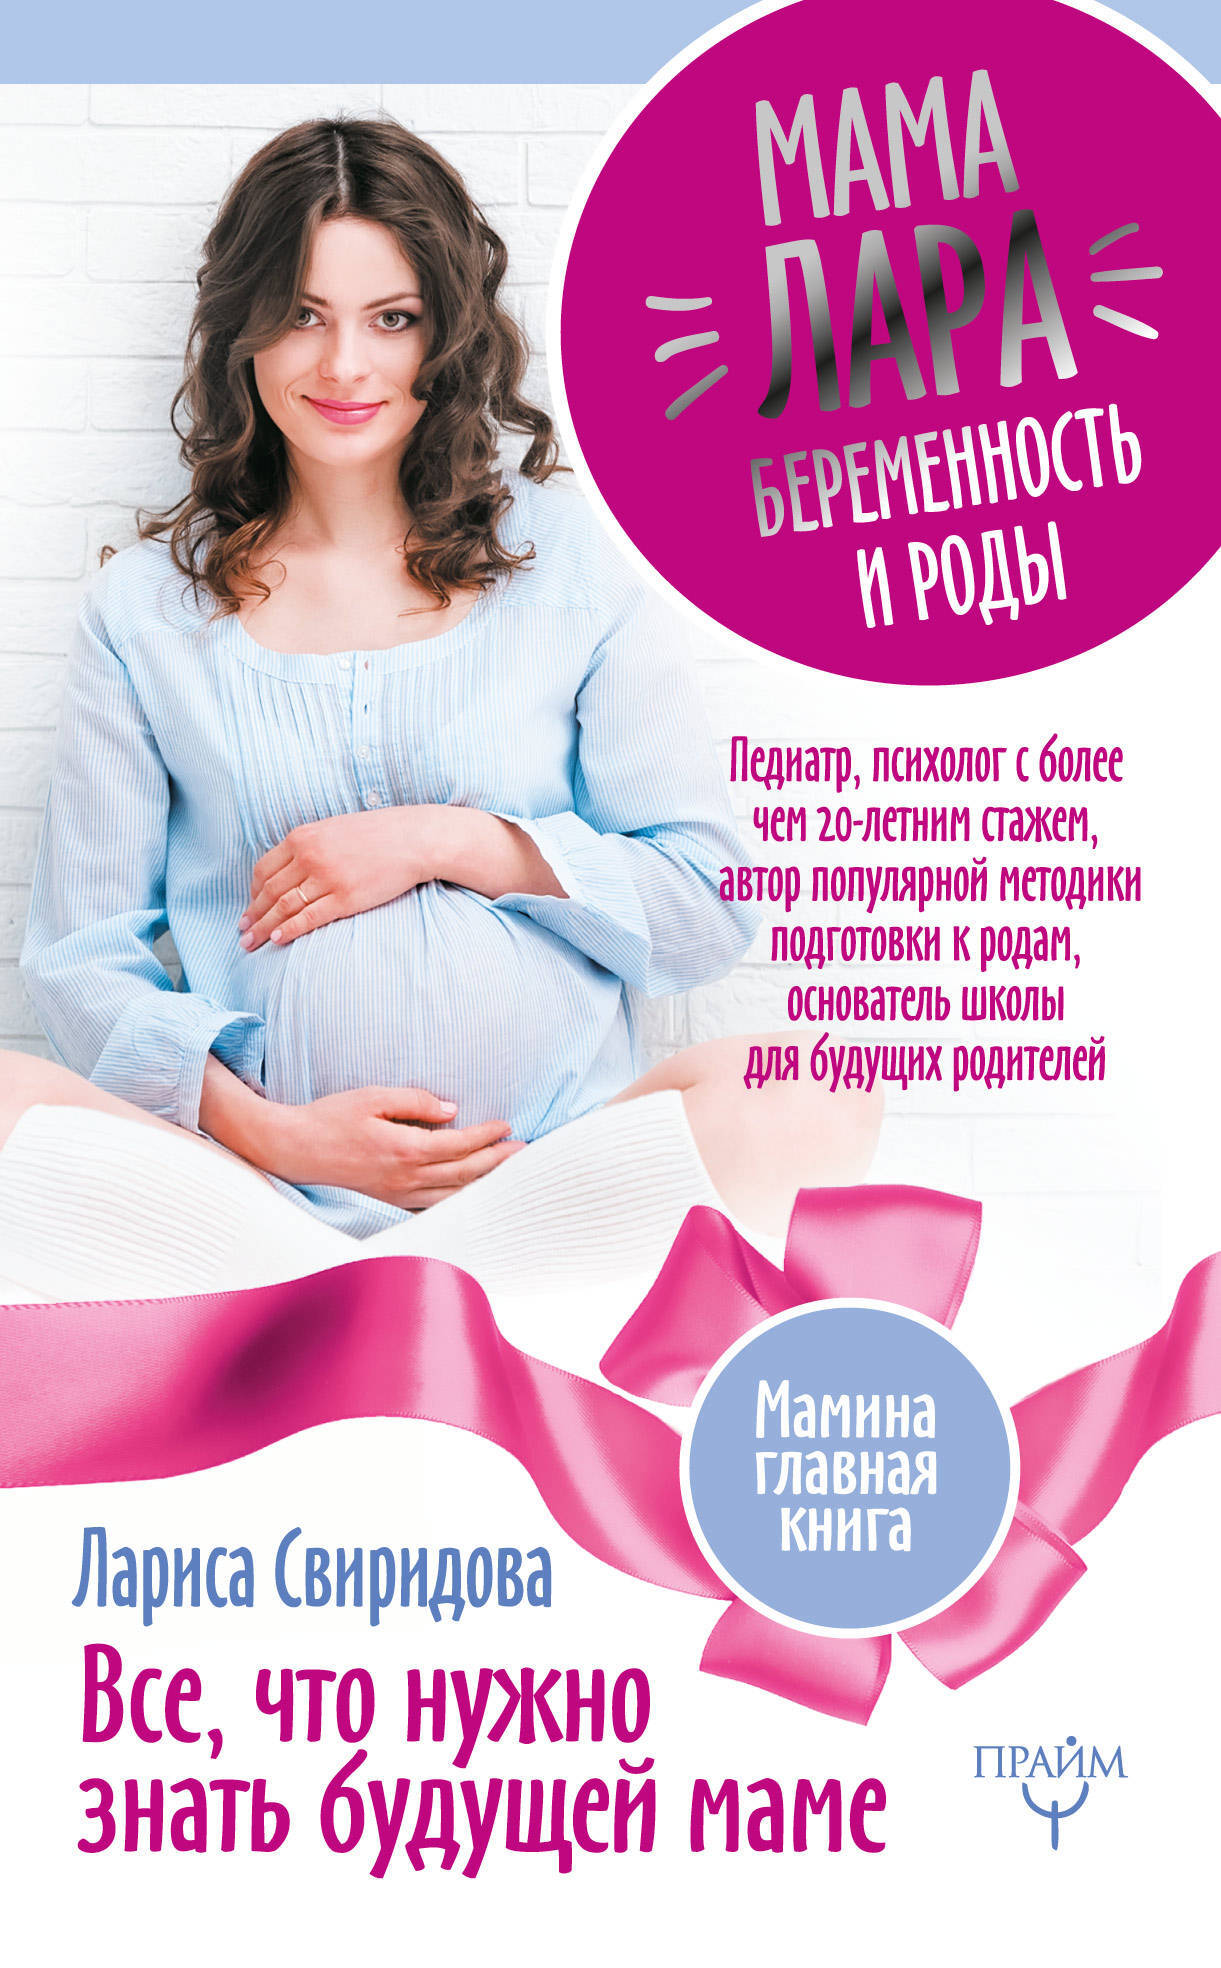 Что нужно будущей маме. Книги для беременных. Лучшие книги для беременных и будущих мам. Что нужно знать будущей маме. Будущая мама.